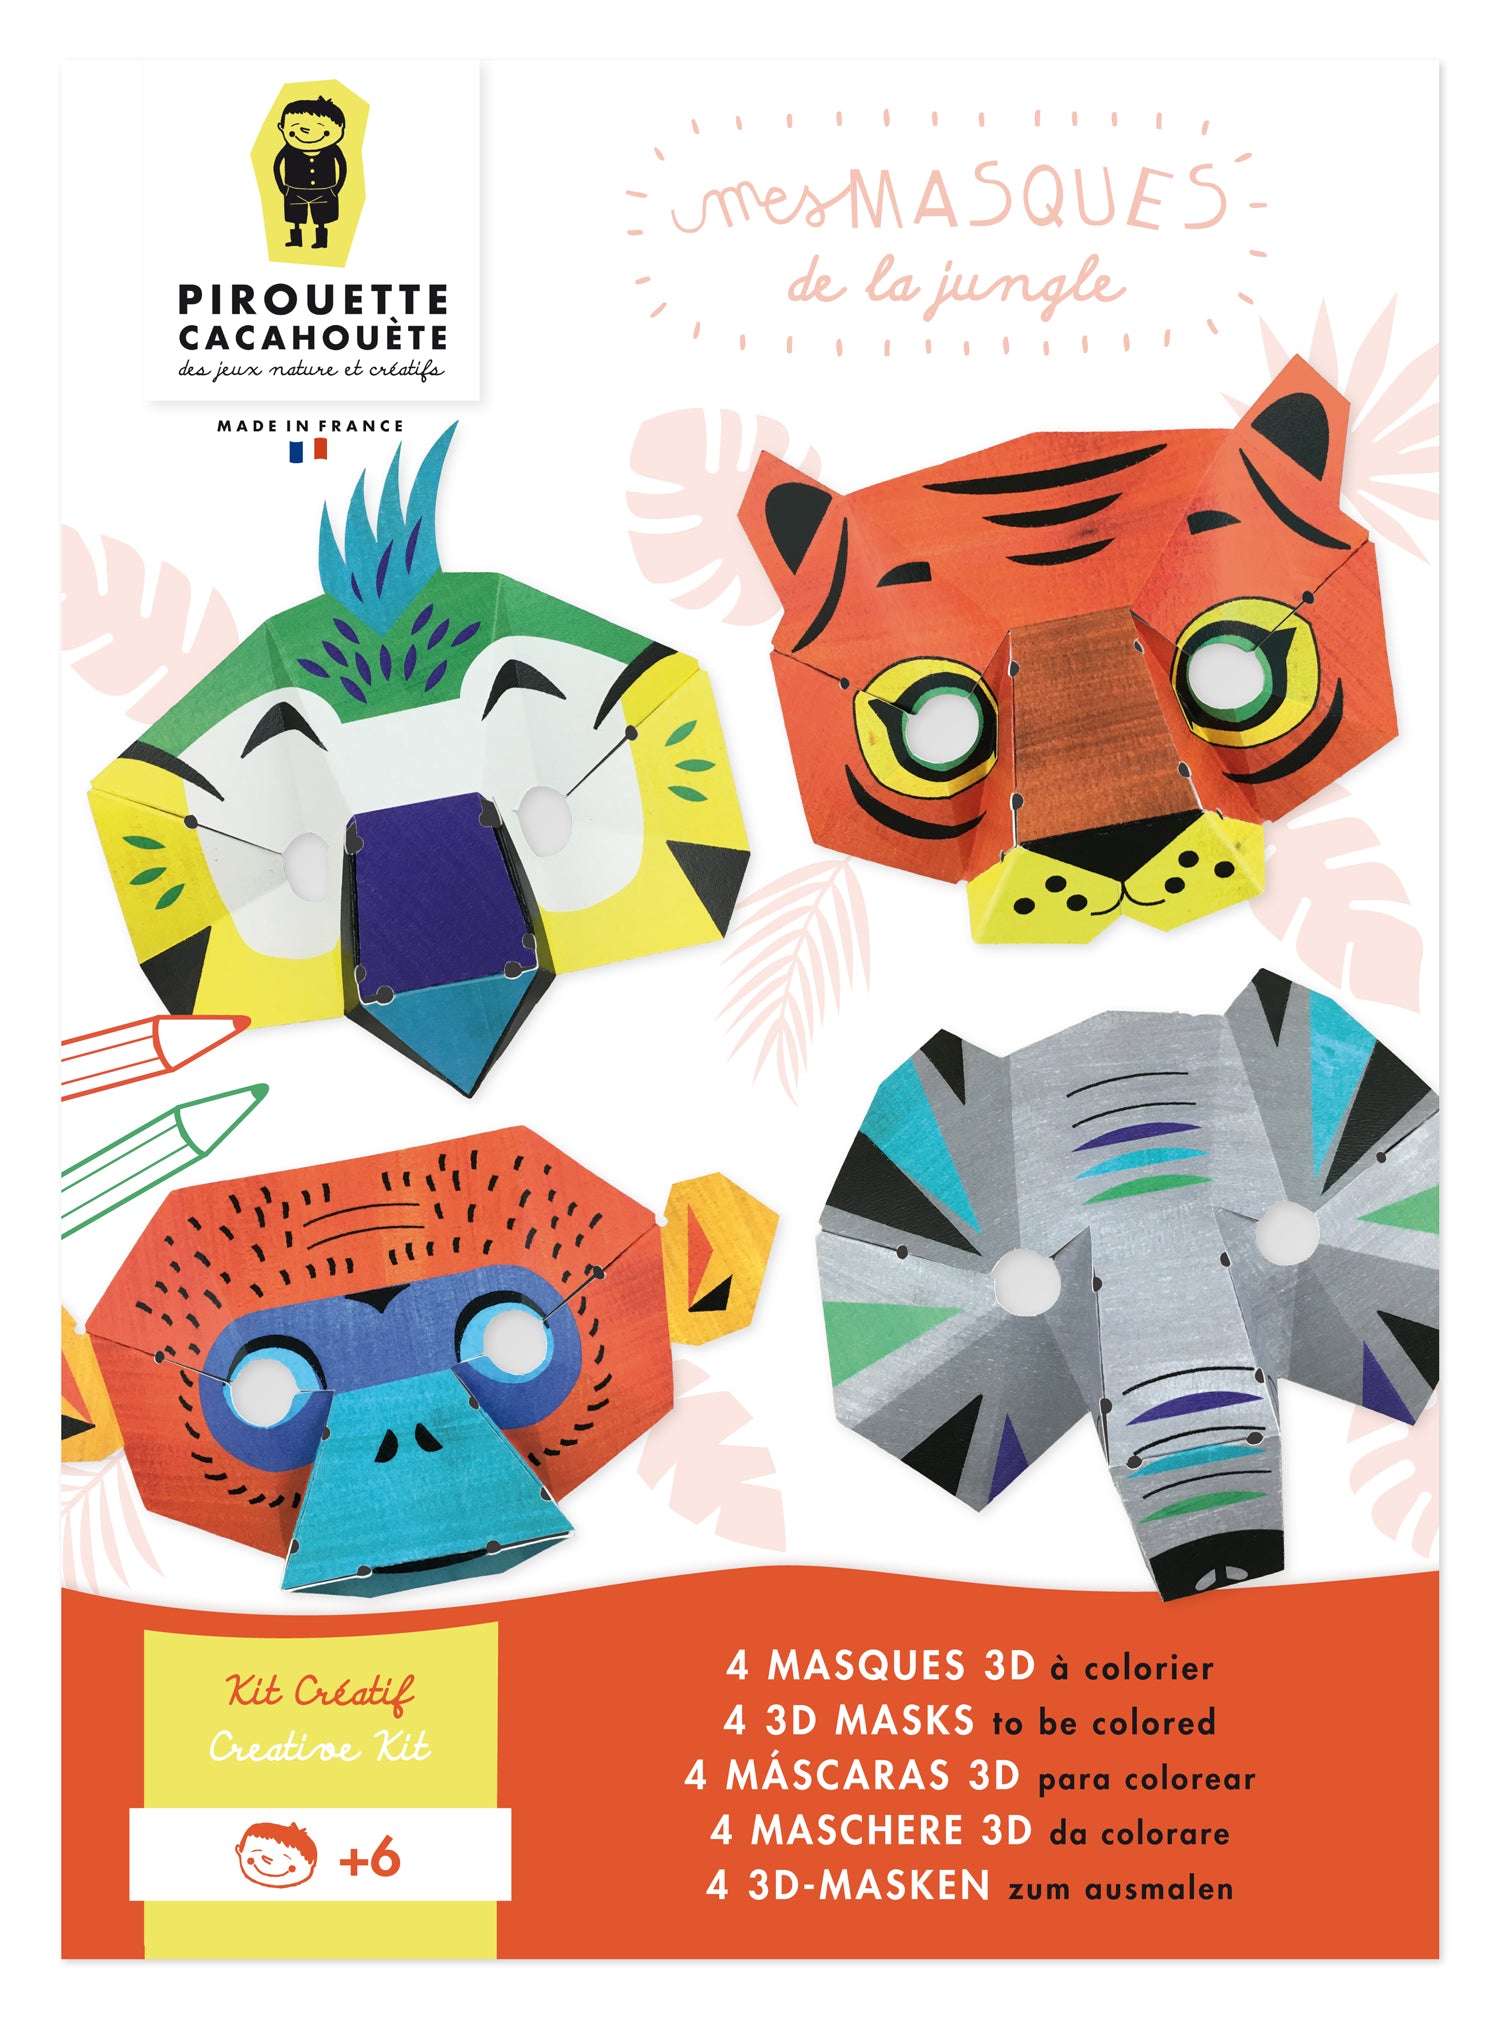 4 Masques 3D a fabriquer et à colorier. Kit créatif pour DIY Carnaval, made in France. Dès 6 ans. Perroquet, tigre, singe et éléphant.